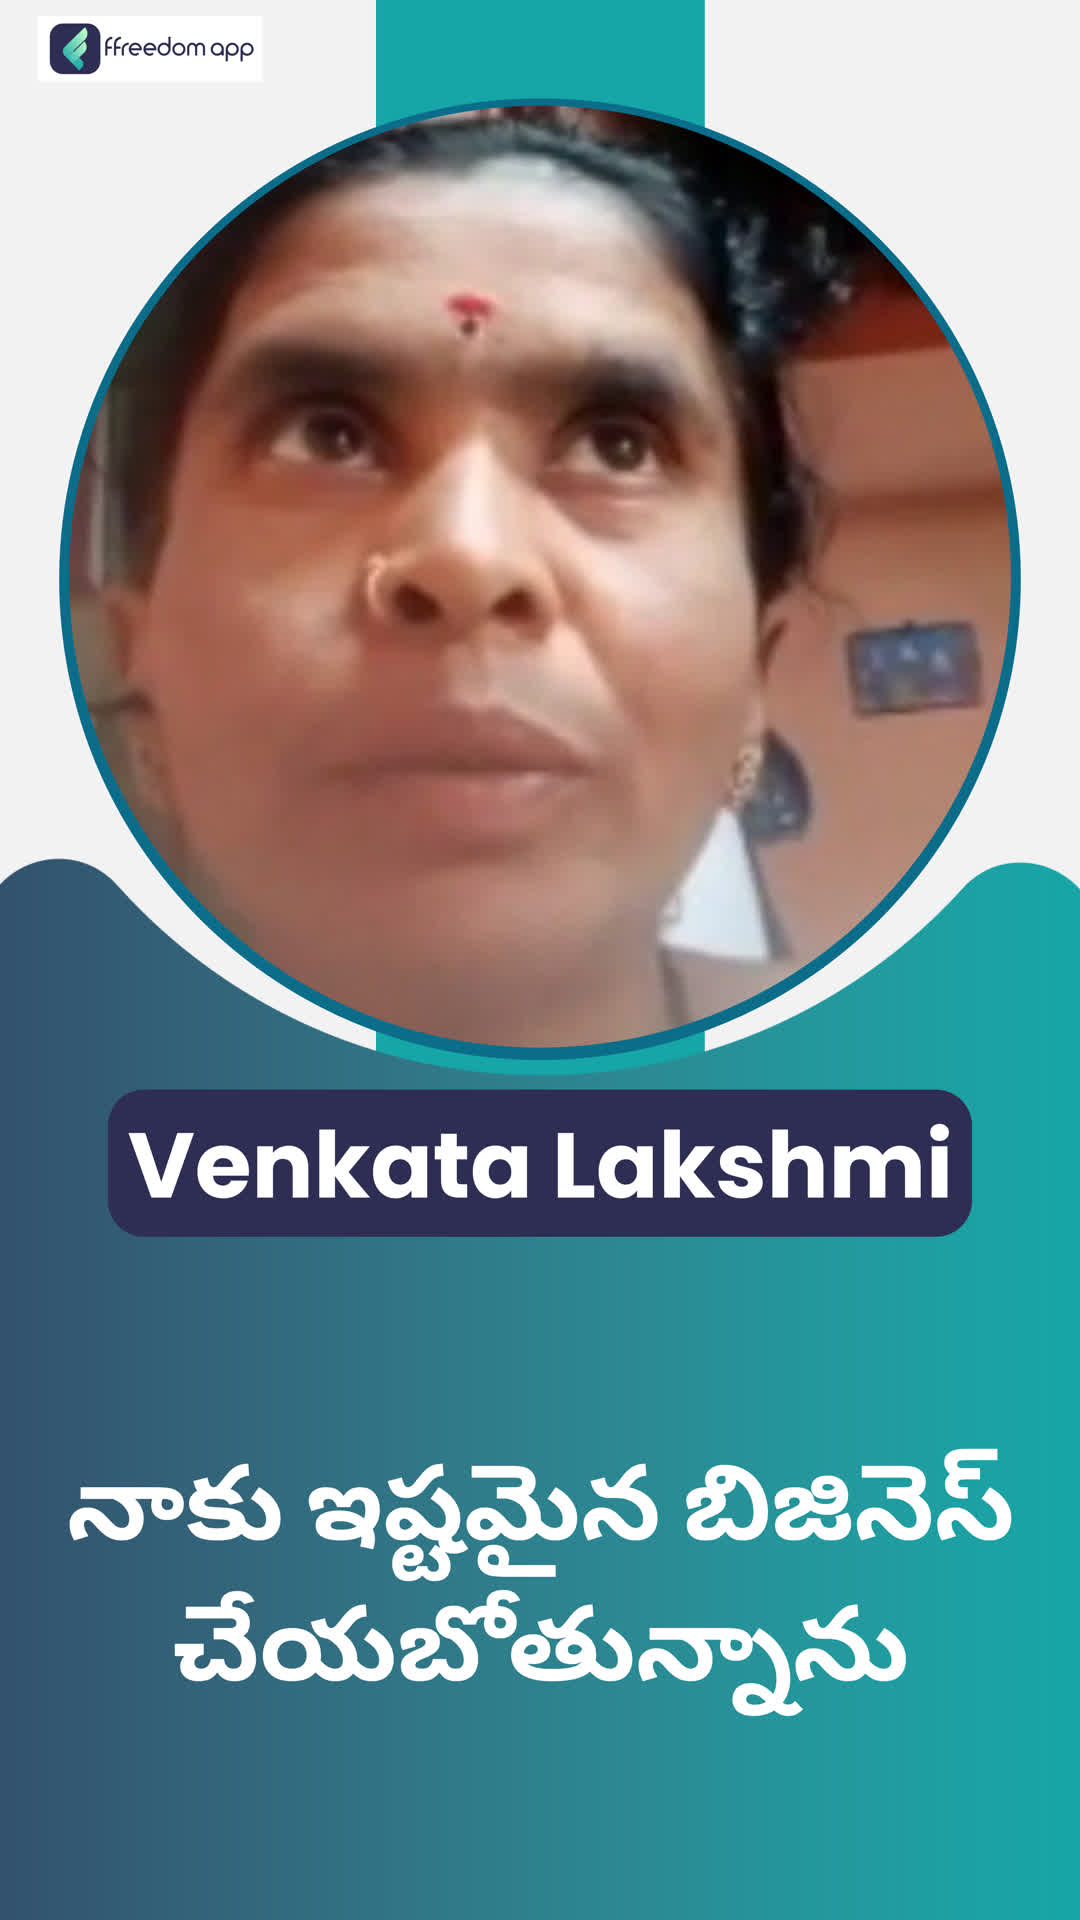 K venkatalakshmi's Honest Review of ffreedom app - Kurnool ,Andhra Pradesh